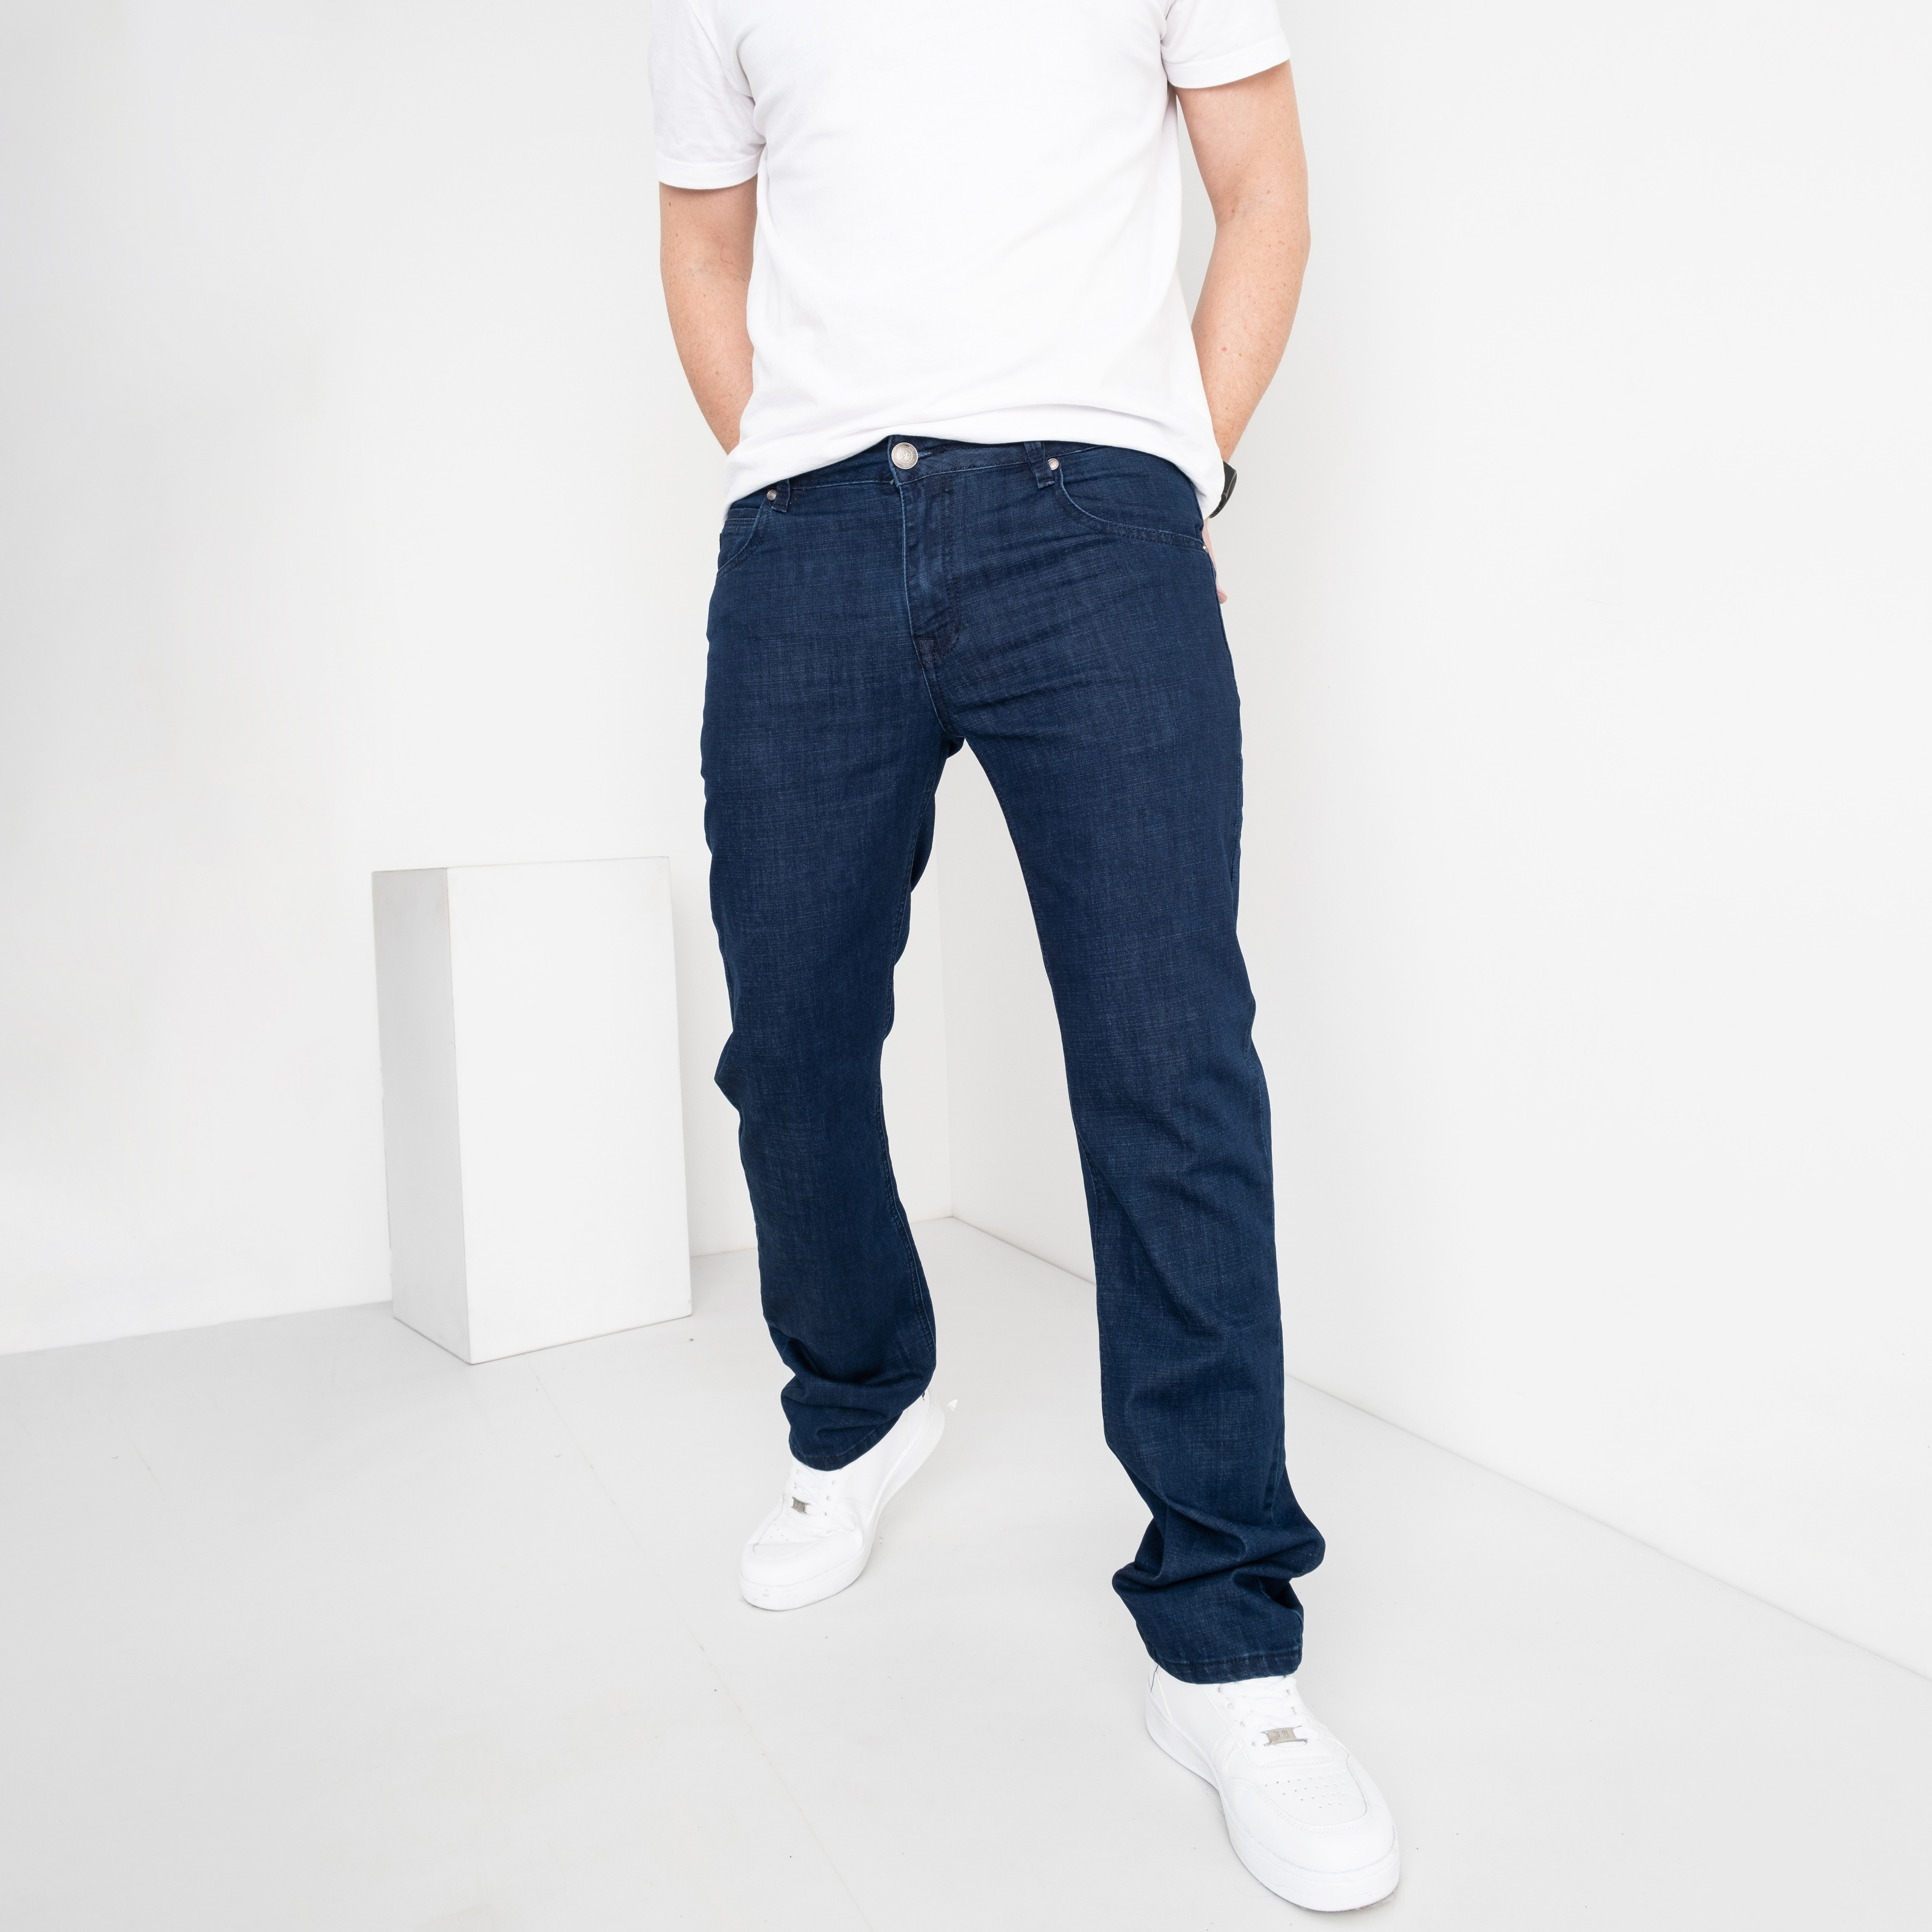 2055 C GOD BARON джинсы мужские полубатальные синие стрейчевые ( 8 ед.размеры: 34/3.36/3.38/2) 